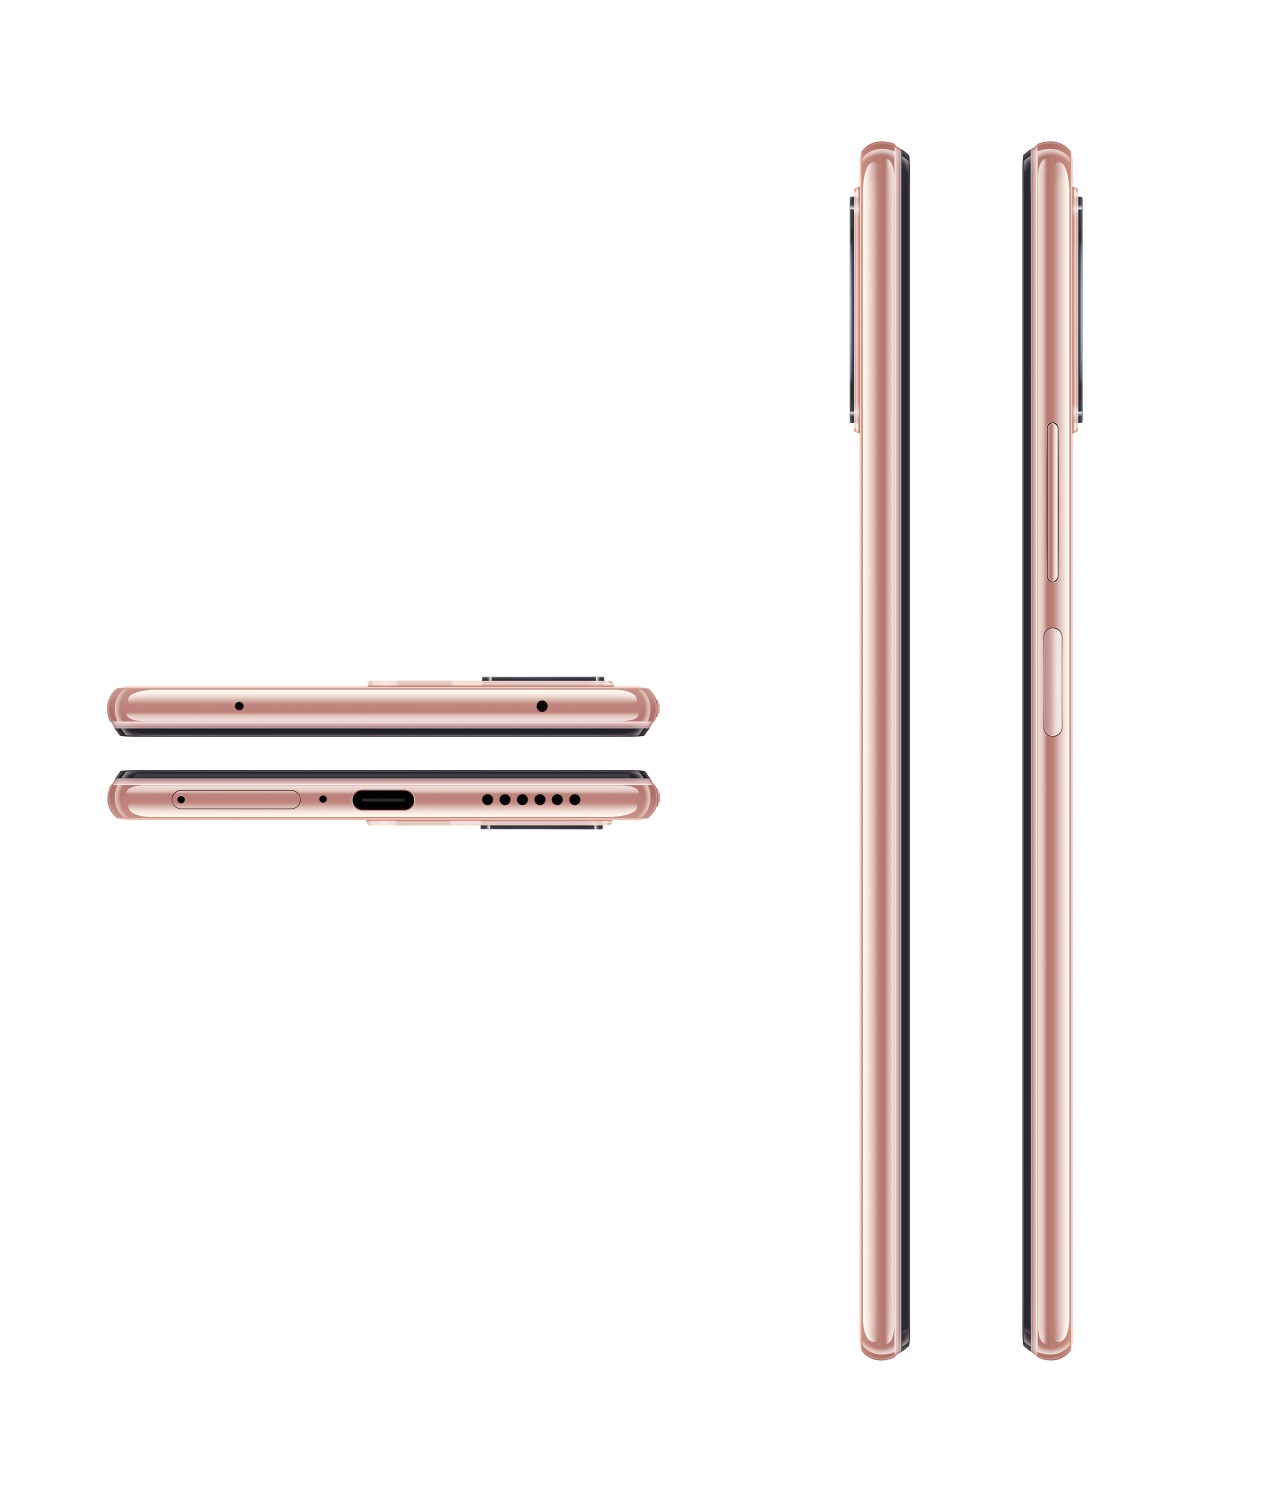 Xiaomi Mi 11 lite 5G NE 8GB/128GB růžová